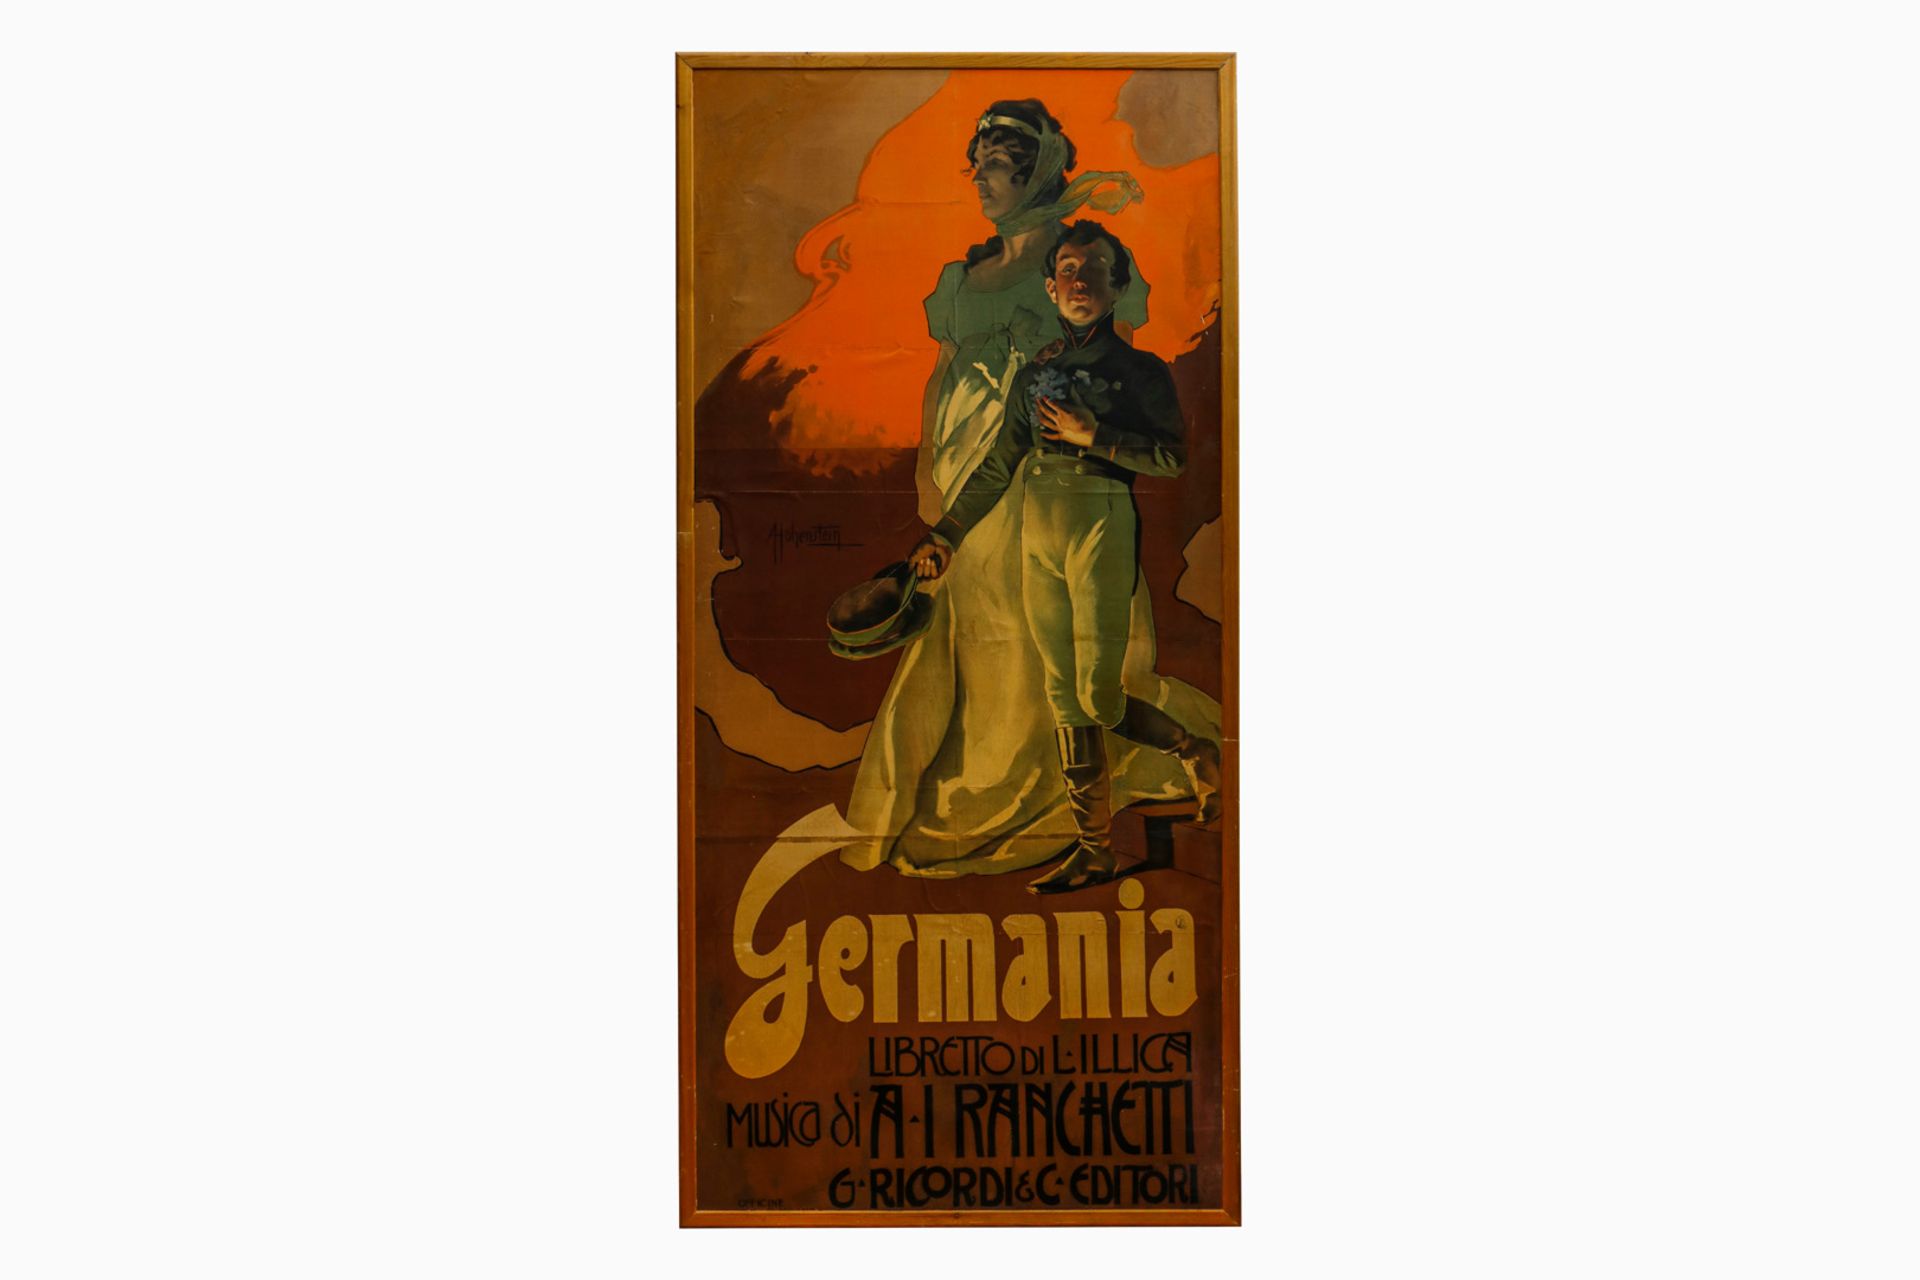 Großes Plakat ”Germania” Libretto Di Lillica Musica di A.I. Ranchetti G. Ricordi & C. Editori,